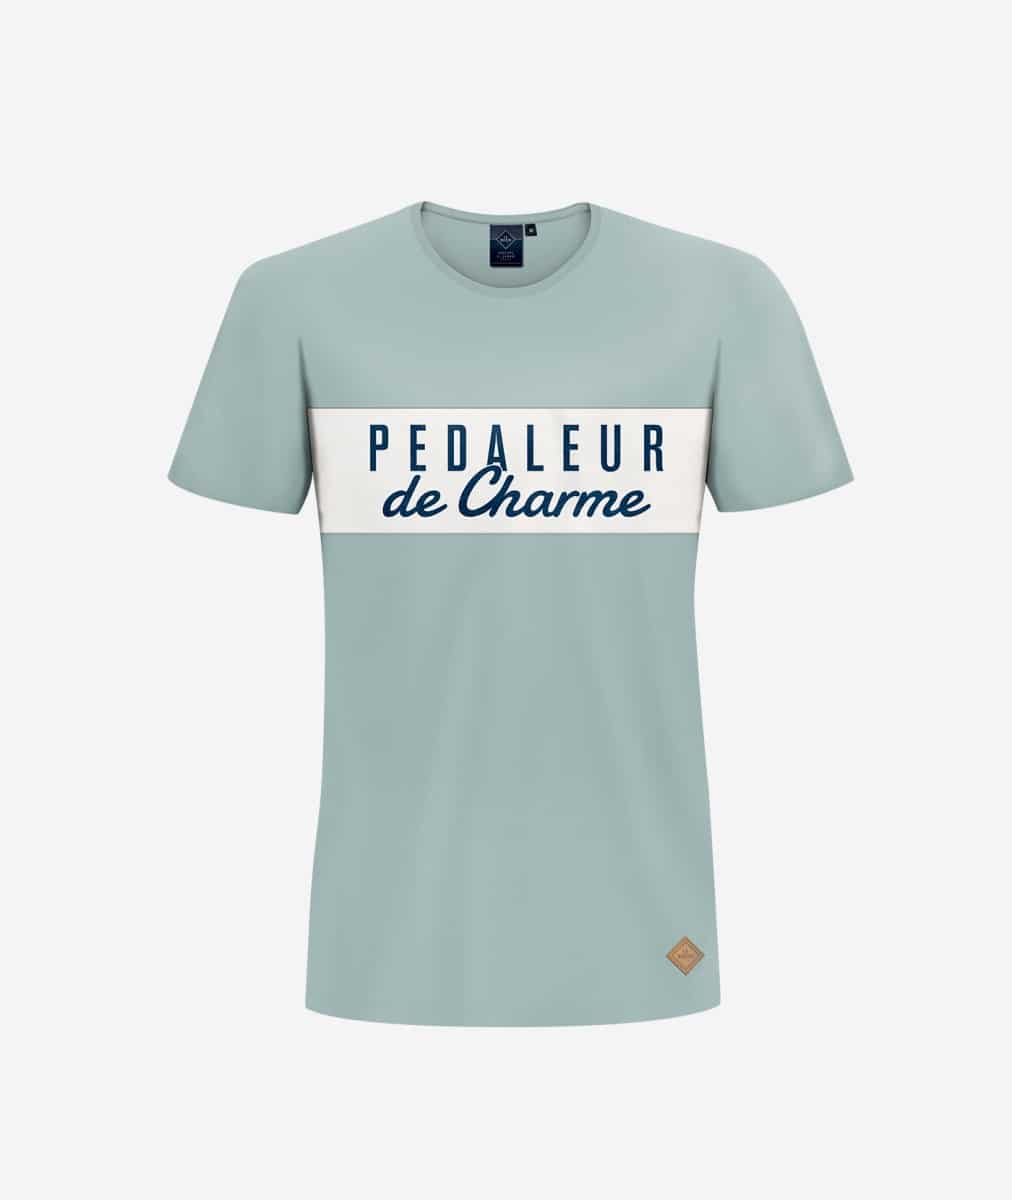 Scheermes heb vertrouwen Norm La Machine Pedaleur de Charme - T-shirt - Vision Sports